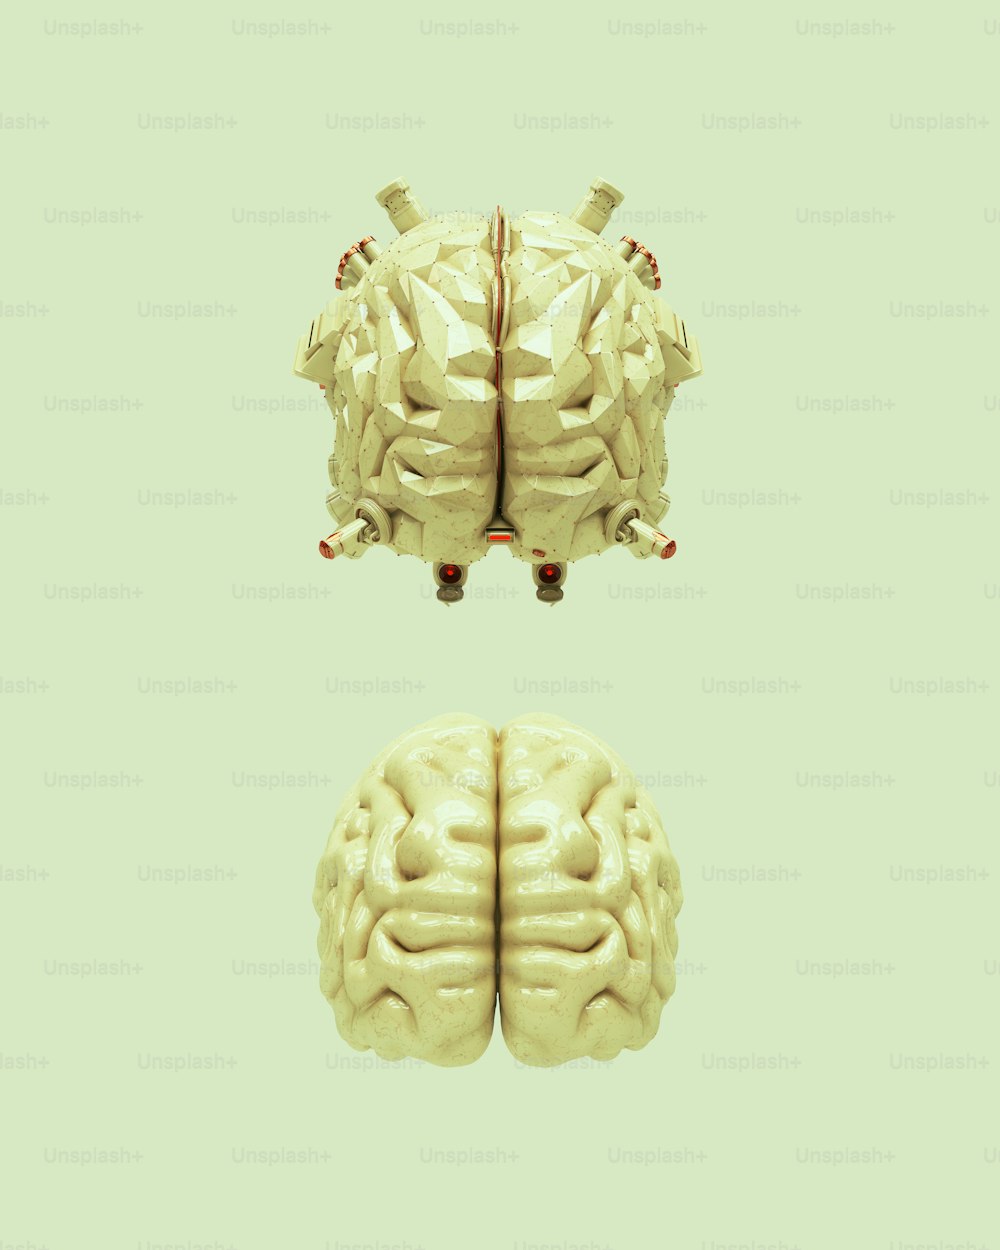 Zwei Bilder desselben menschlichen Gehirns